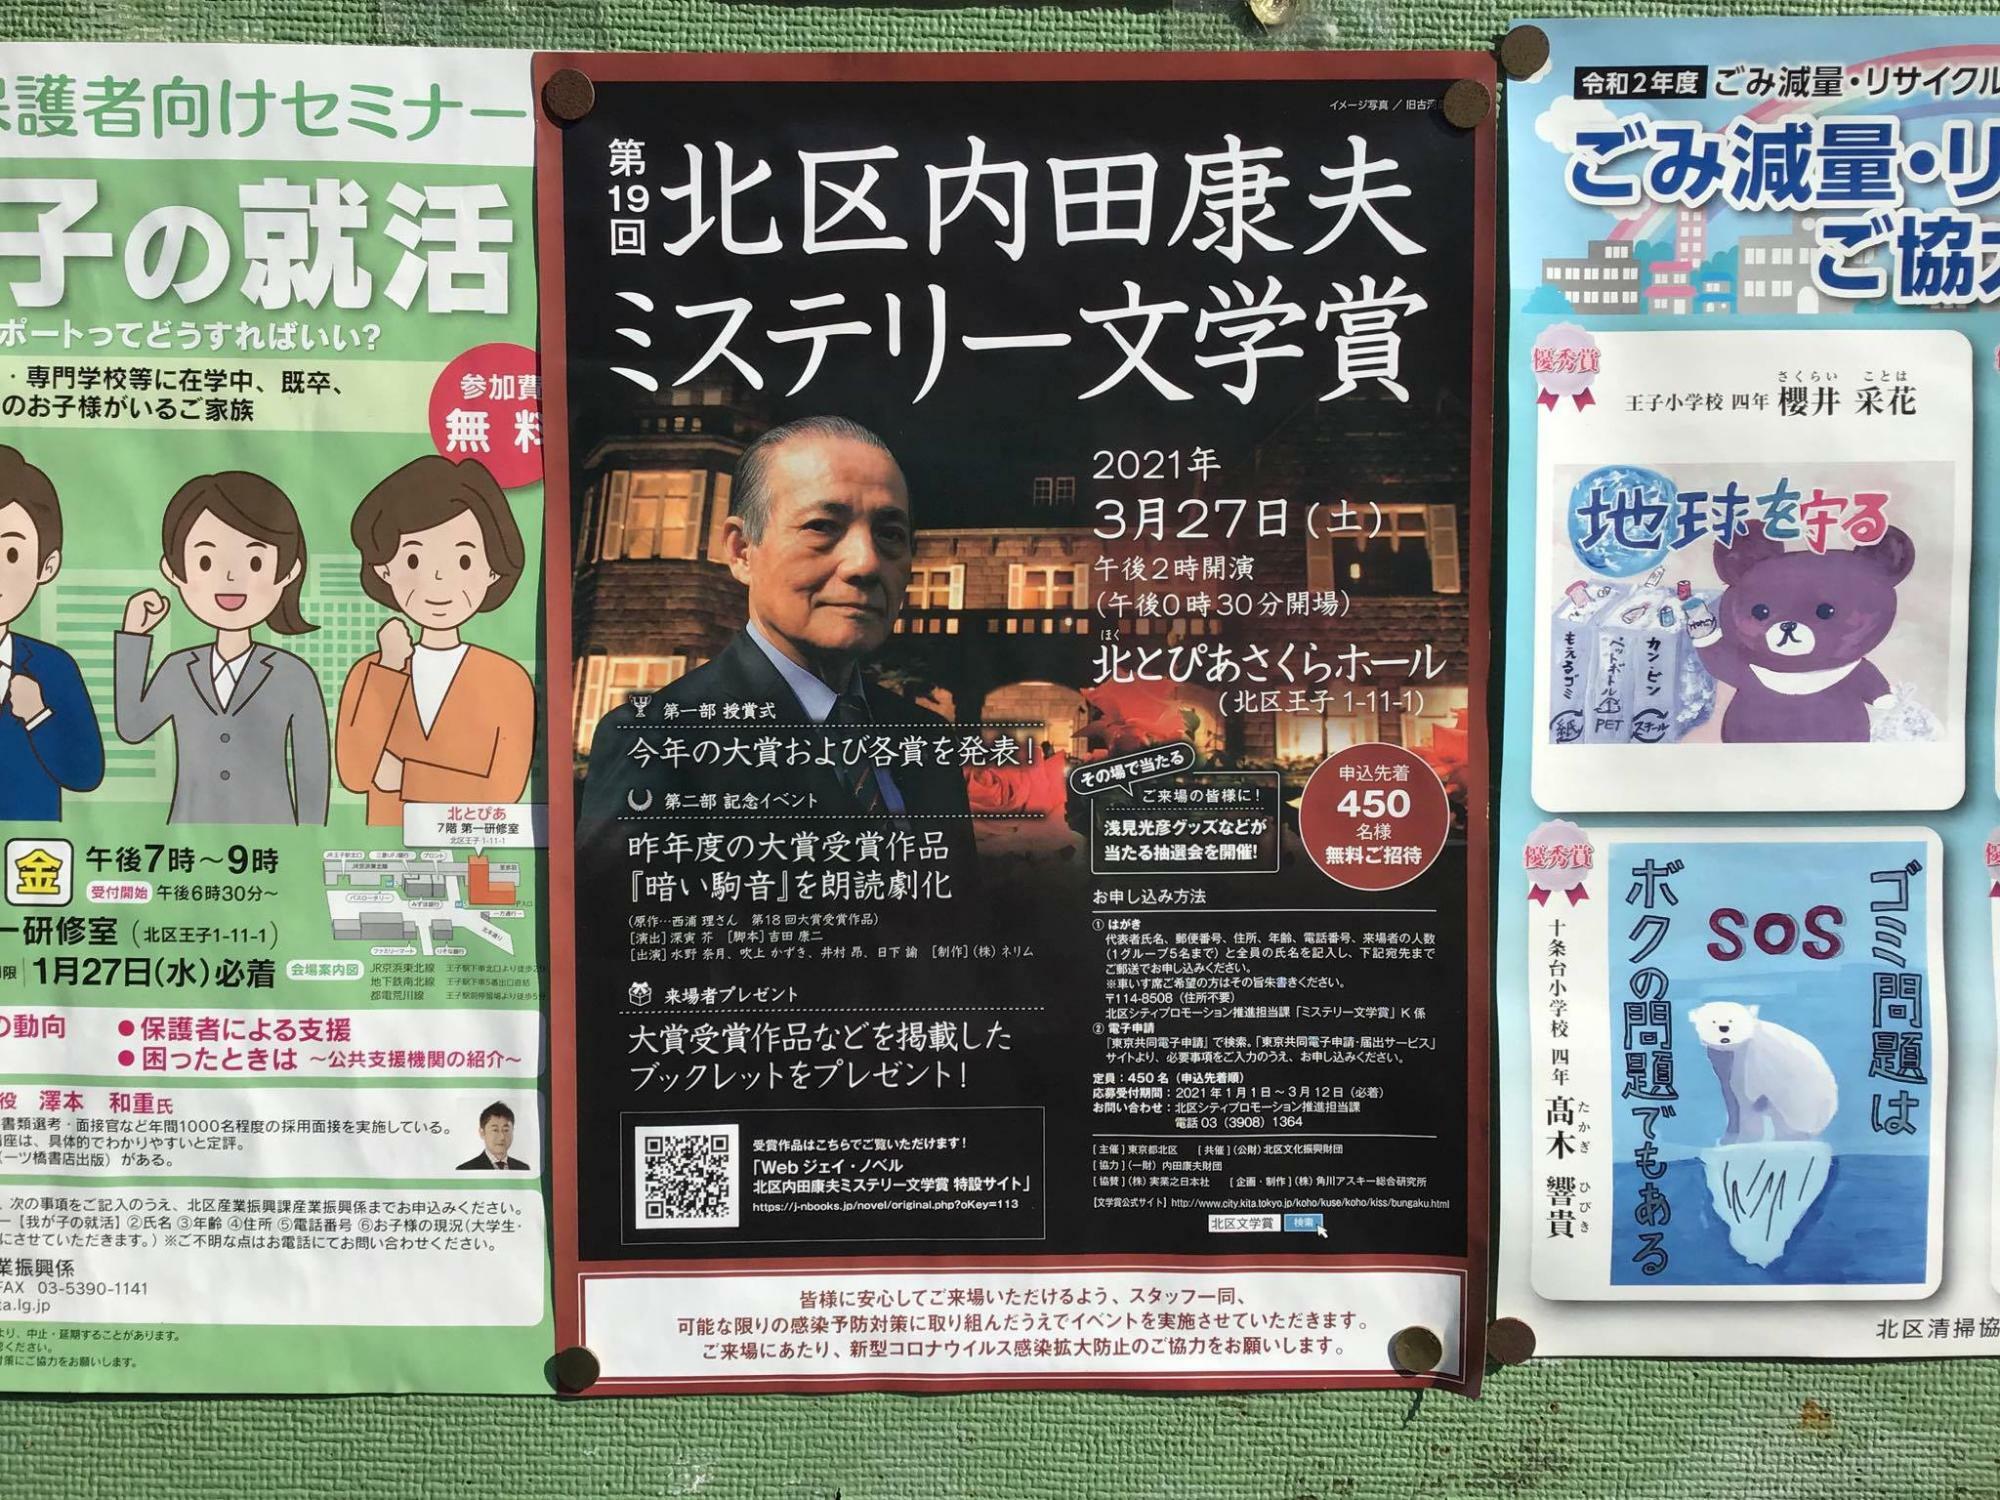 ※参考：2021年に行われた第19回「北区内田康夫ミステリー文学賞」授賞式・記念イベントのポスター